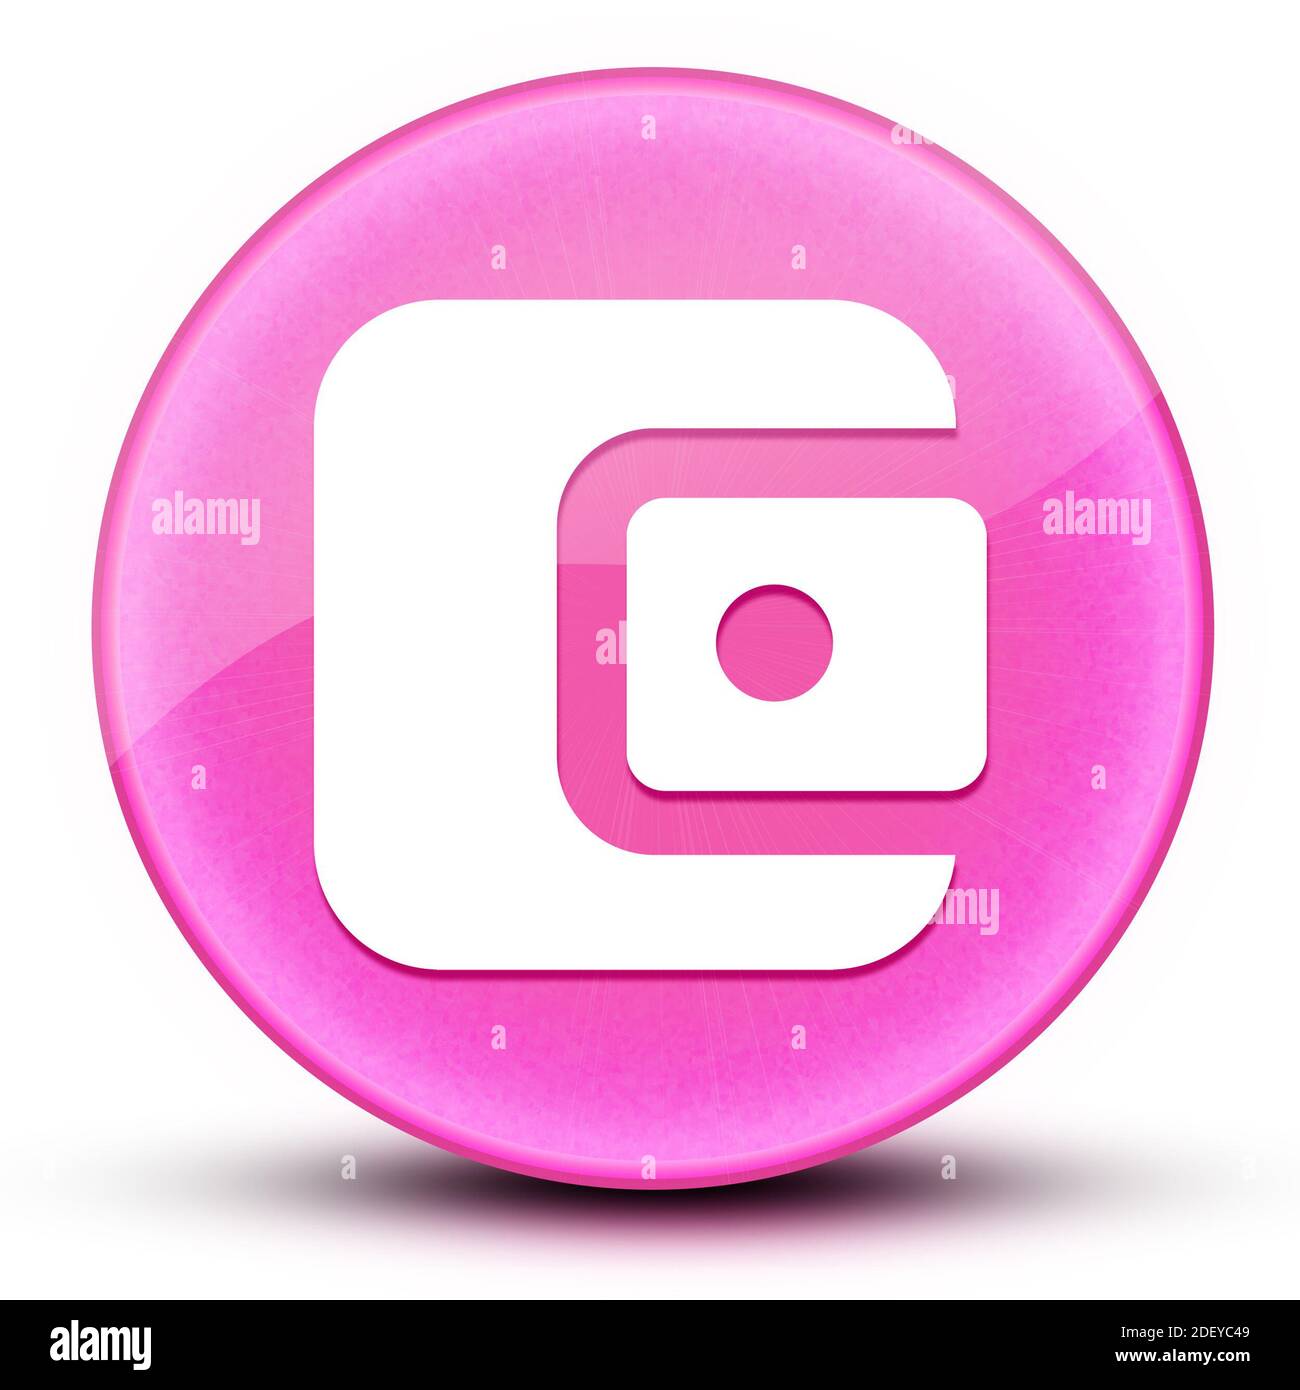 Account Balance portafoglio eyeball lucido elegante rosa pulsante rotondo astratto illustrazione Foto Stock